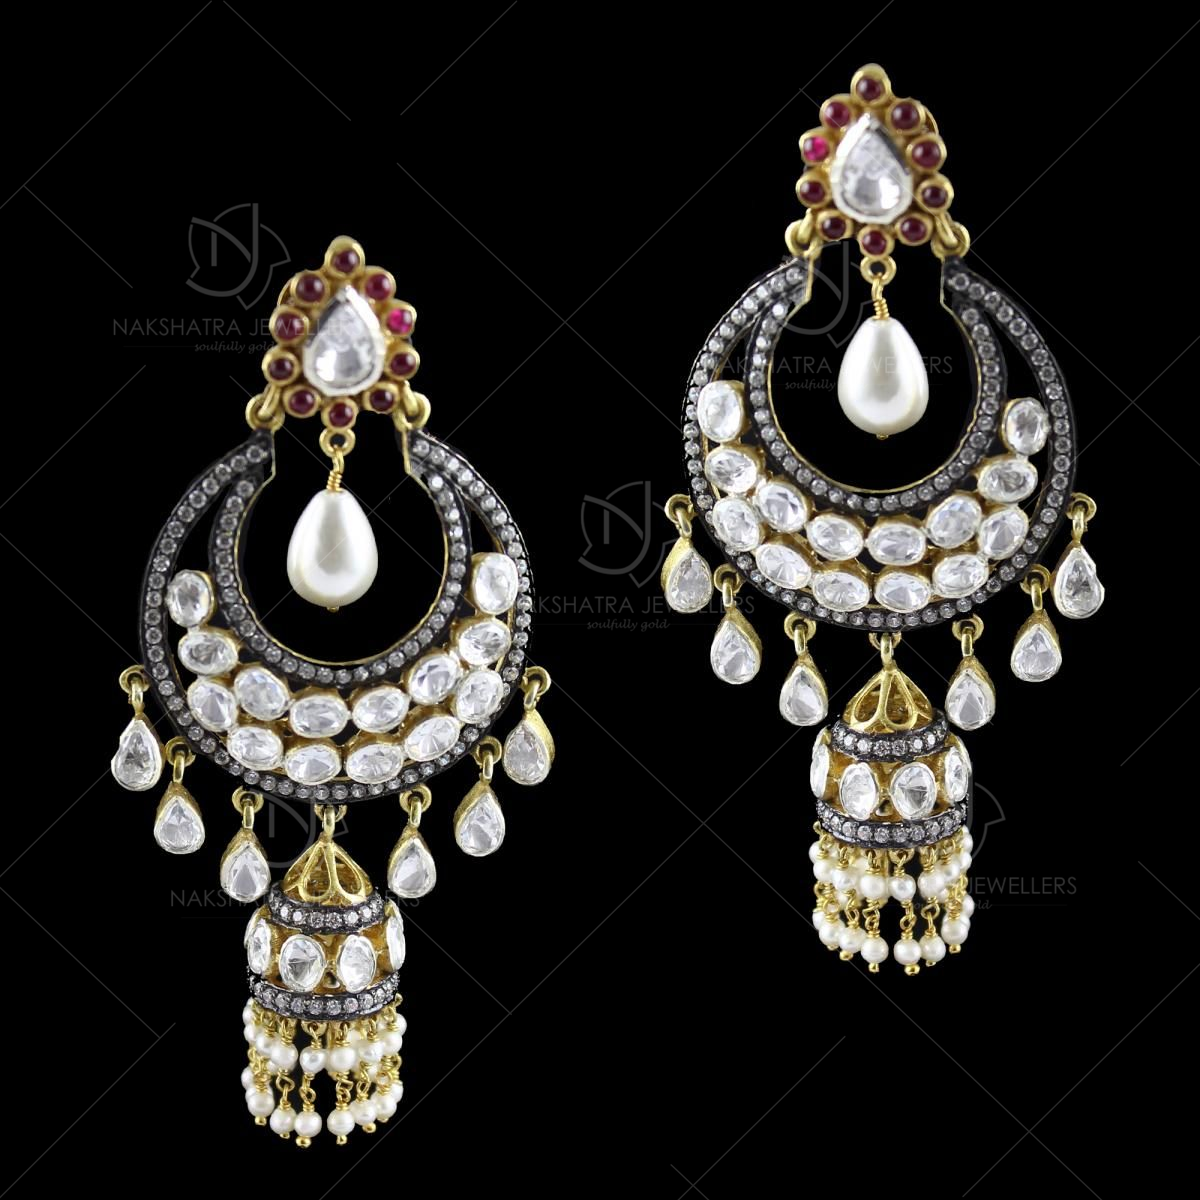 Polki earrings | Polki earrings, Drop earrings, Earrings